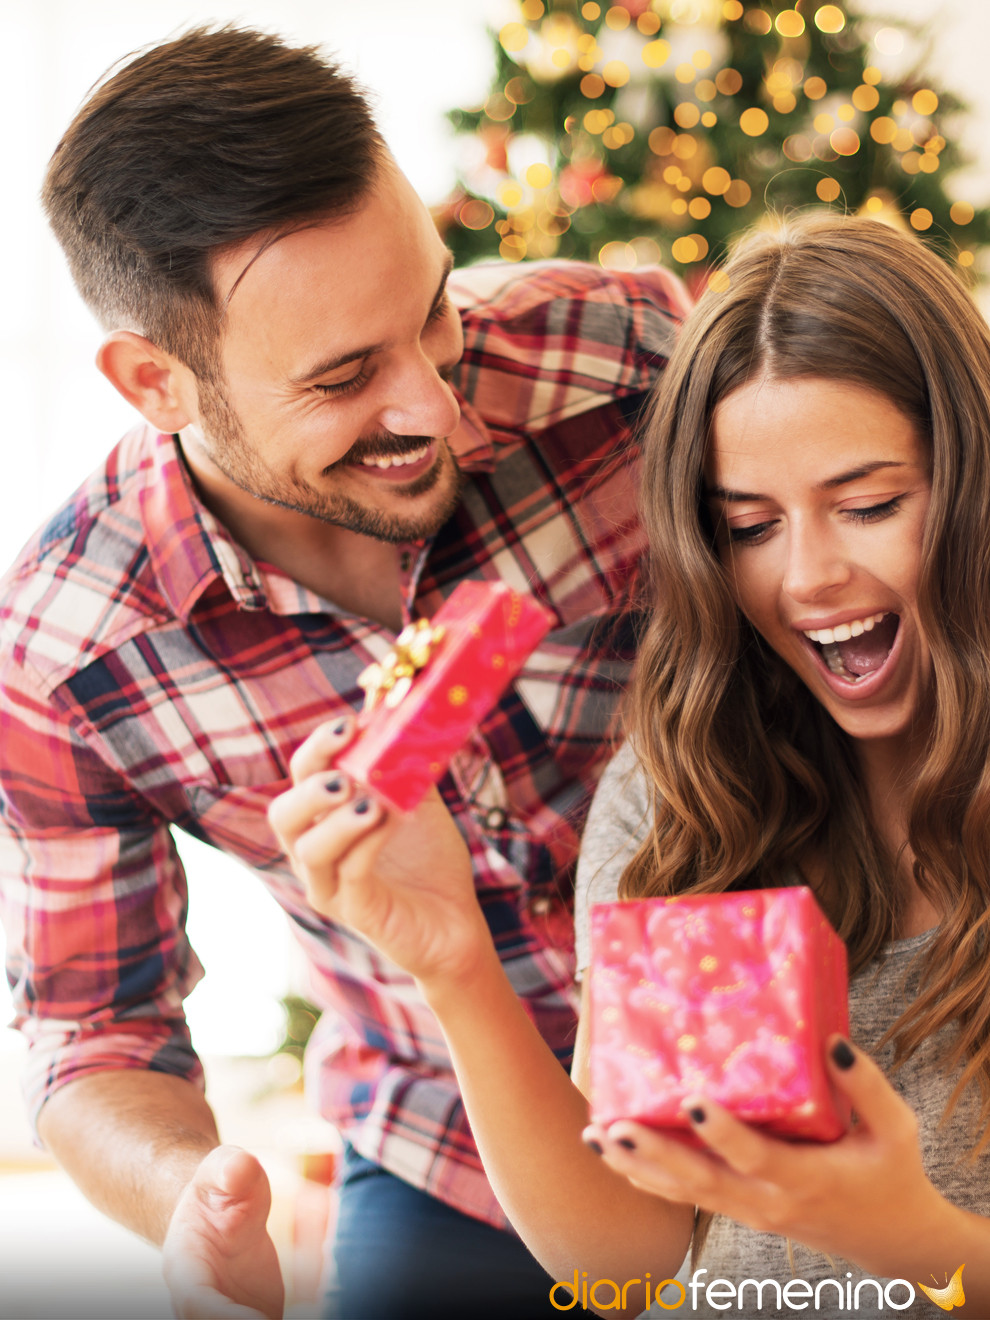 Qué regalar a tu novia en Navidad (si lleváis poco o mucho tiempo